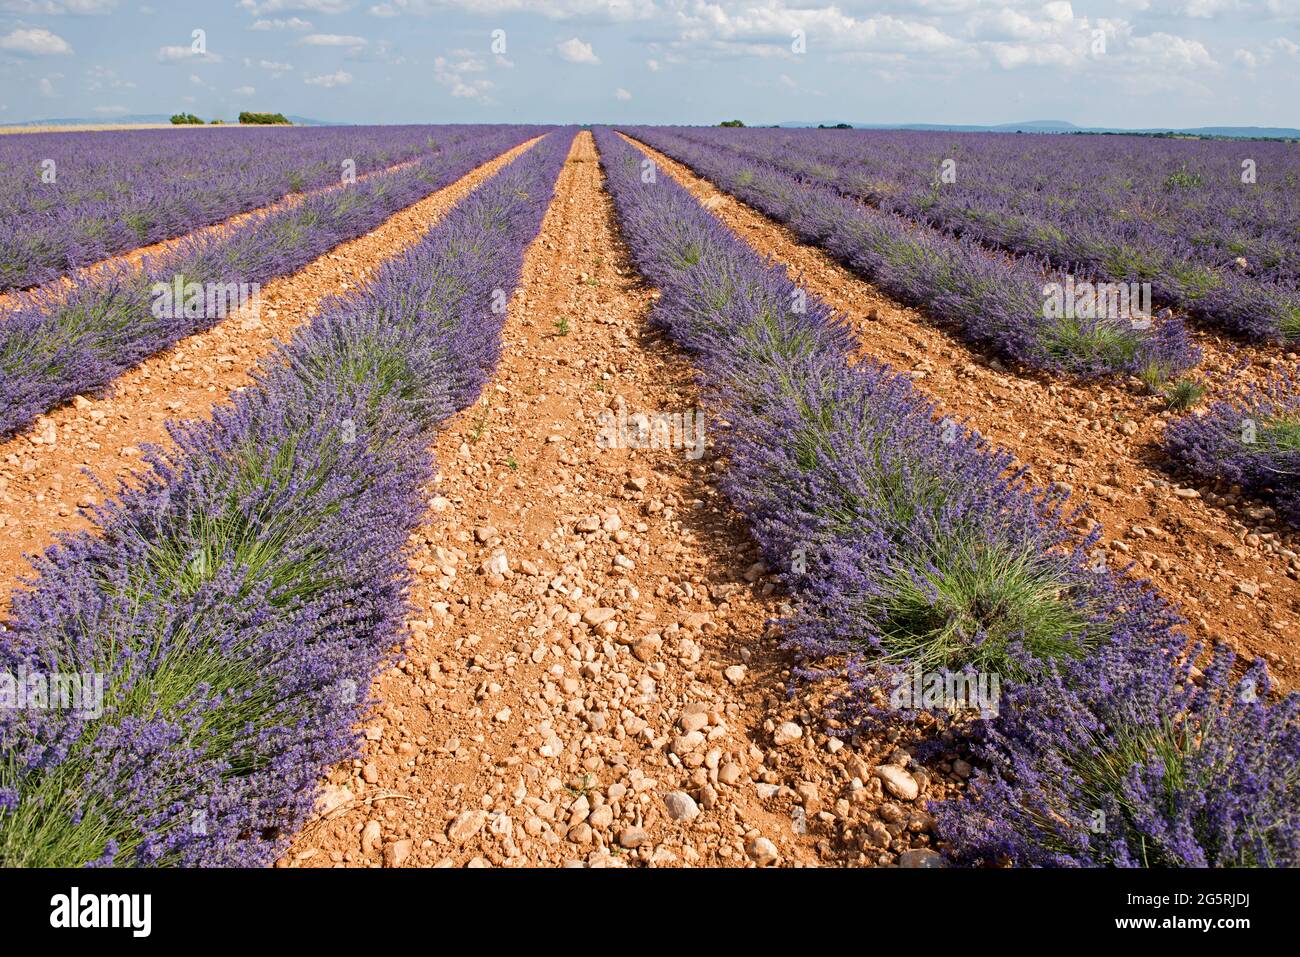 France, Alpes de Haute Provence (04), plateau de Valensole, lavender fields (Lavandula sp.) Stock Photo